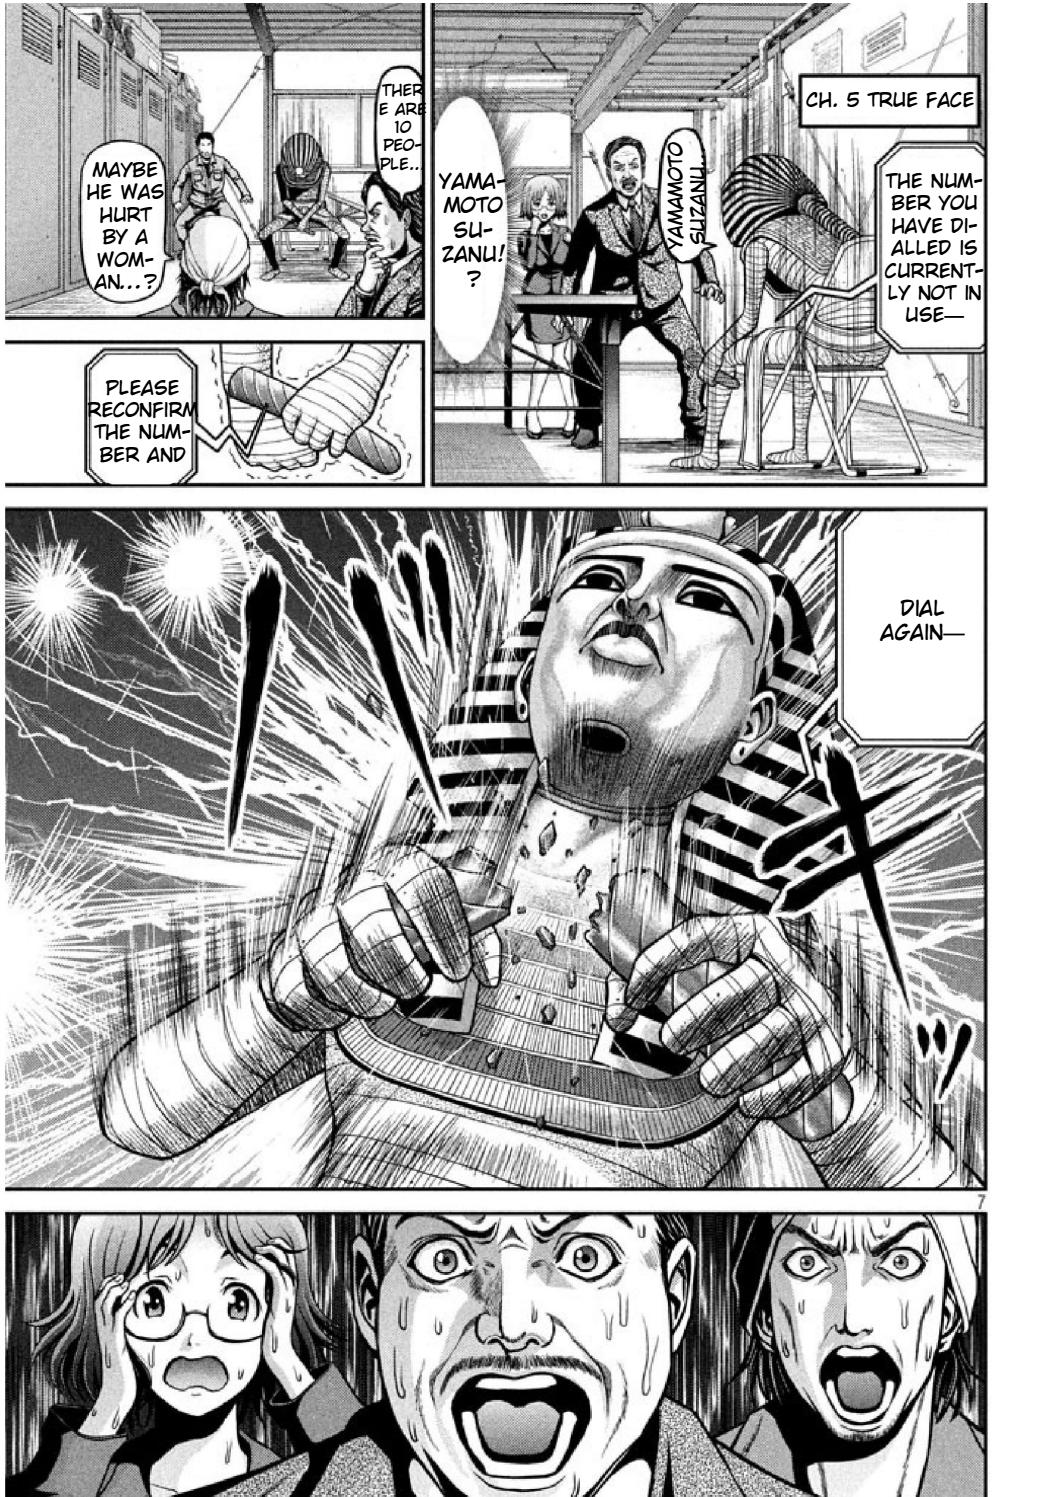 Pharaoh Vol. 1 Ch. 5 True Face